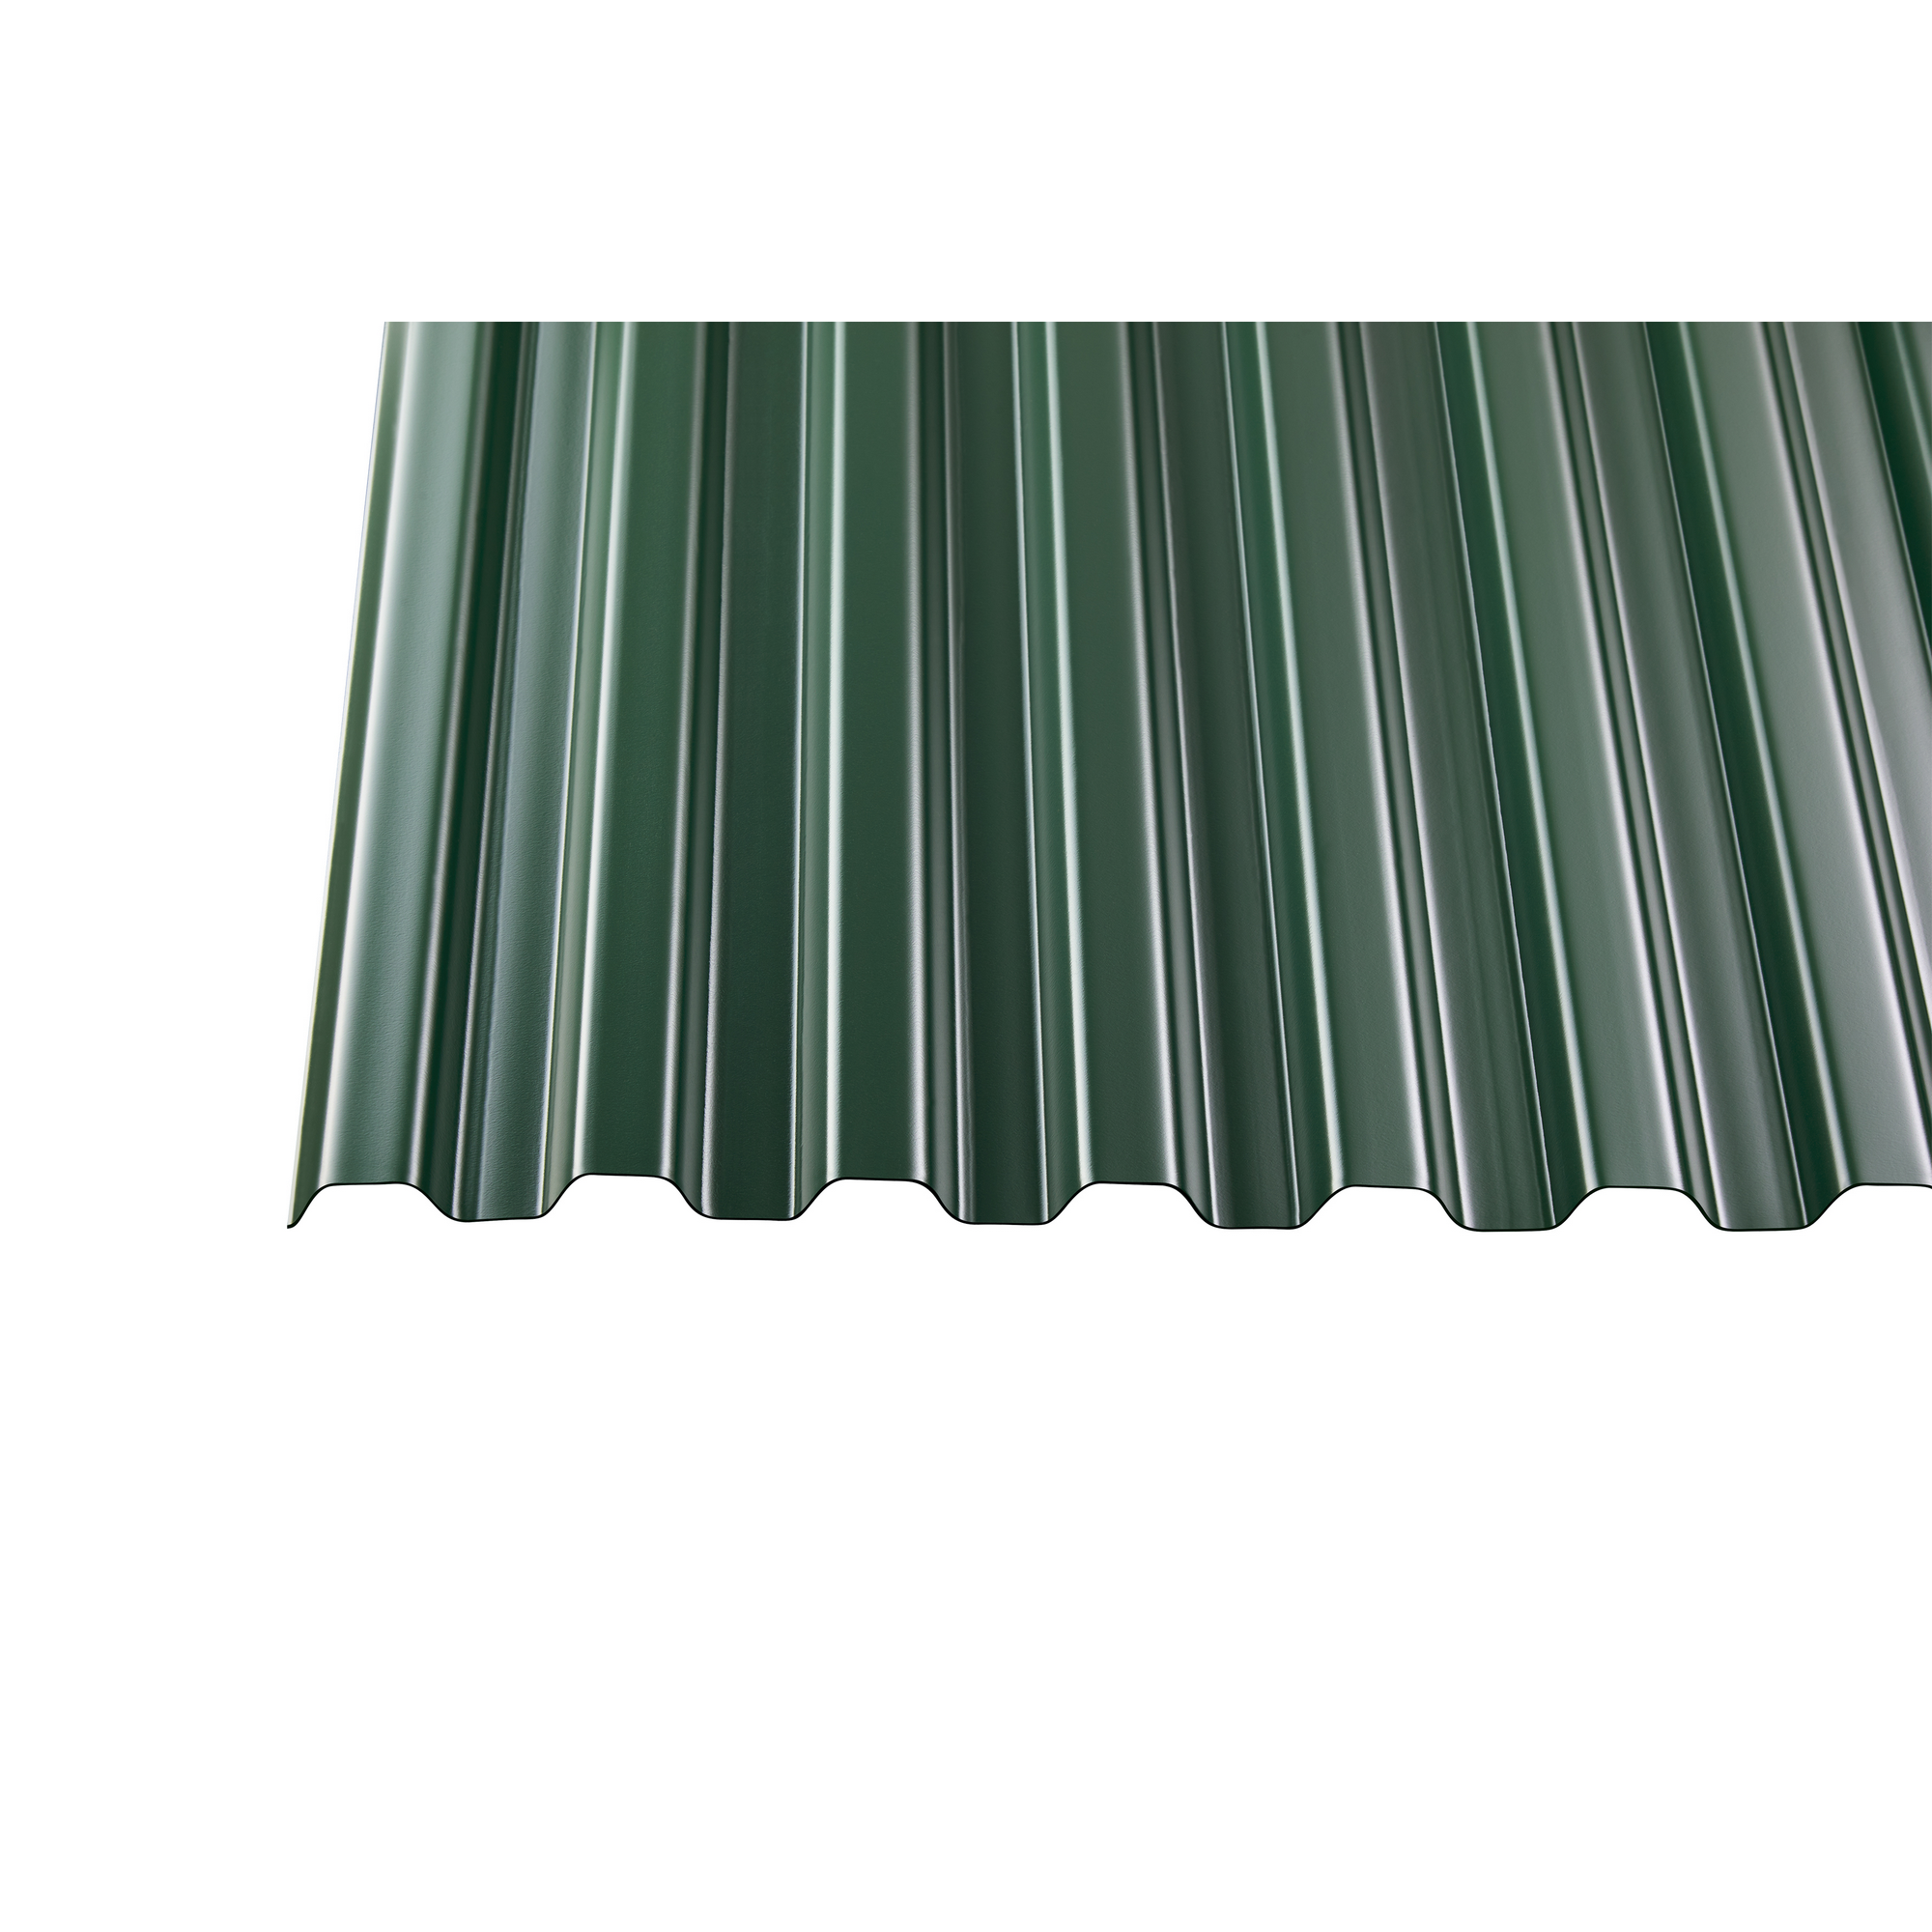 PVC-Wellplatte 'Trapez 70/18' grün 200 x 90 x 0,12 cm + product picture